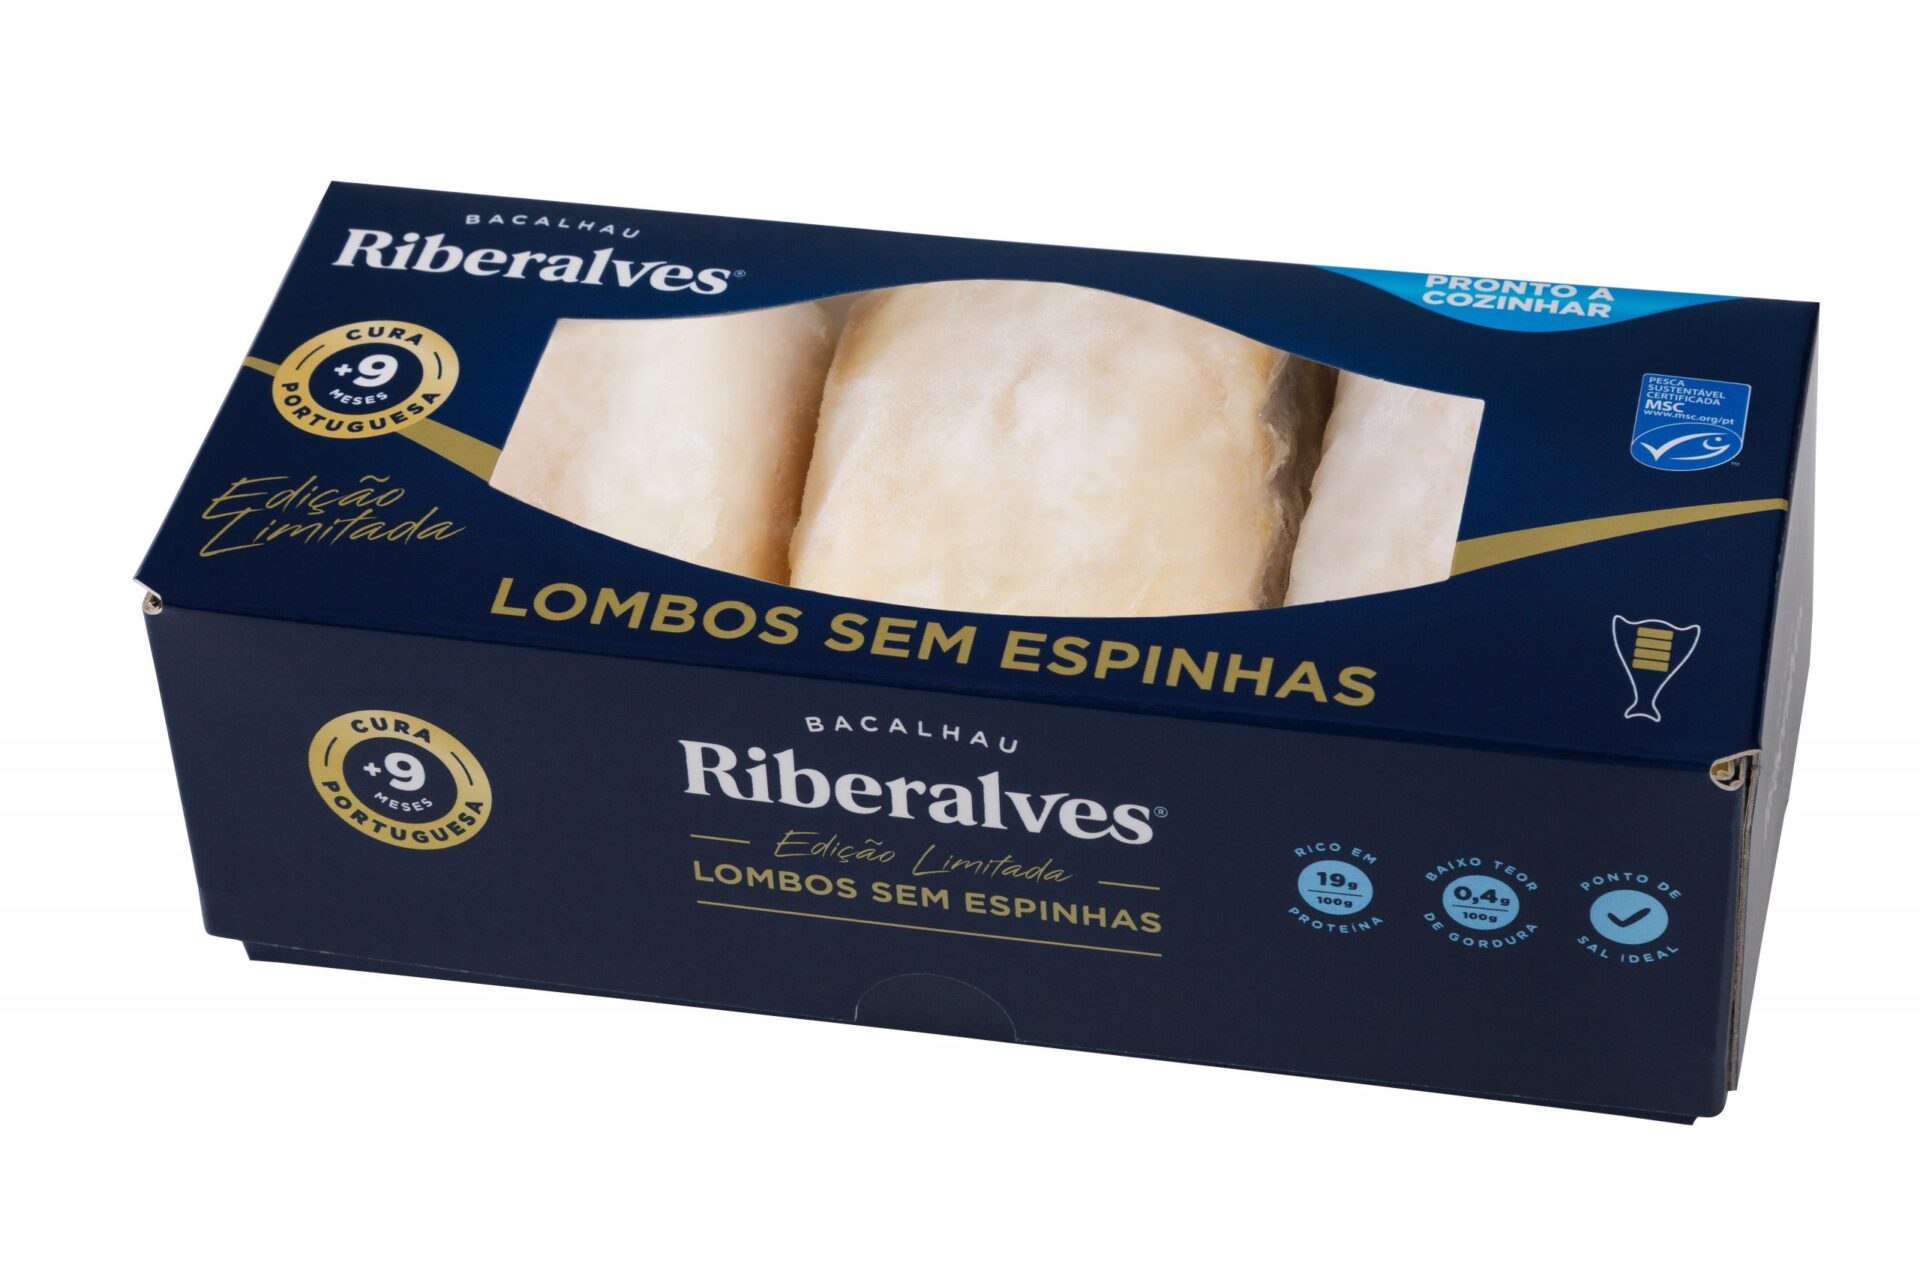 Lançamento de Natal. Chega ao mercado o primeiro Lombo de Bacalhau Riberalves sem Espinhas!